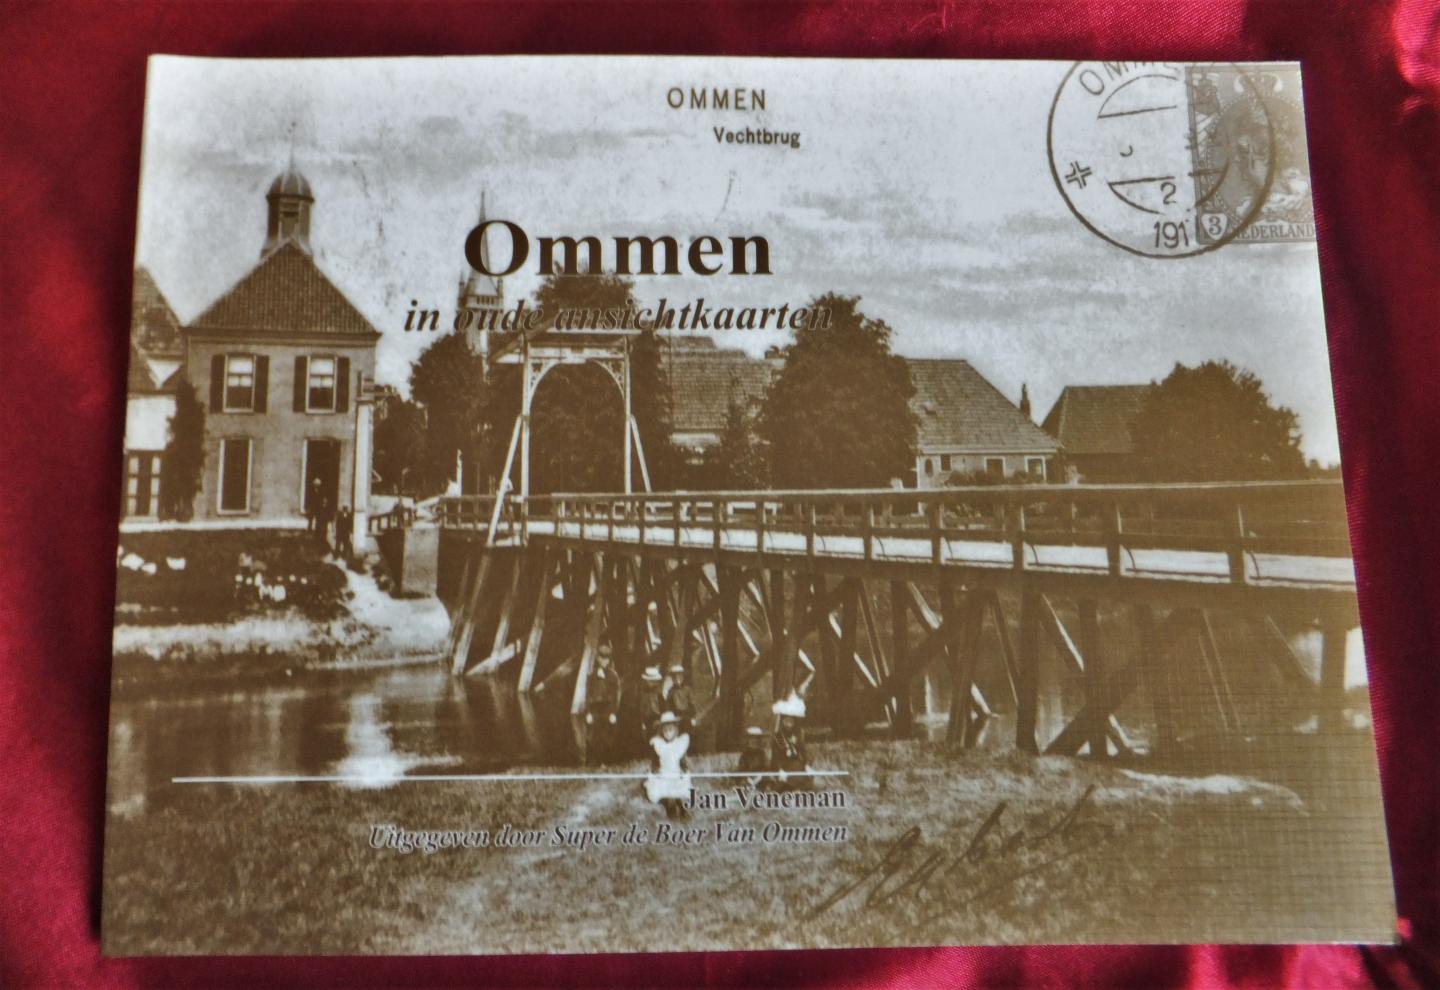 Veneman, Jan - Ommen in oude ansichtkaarten